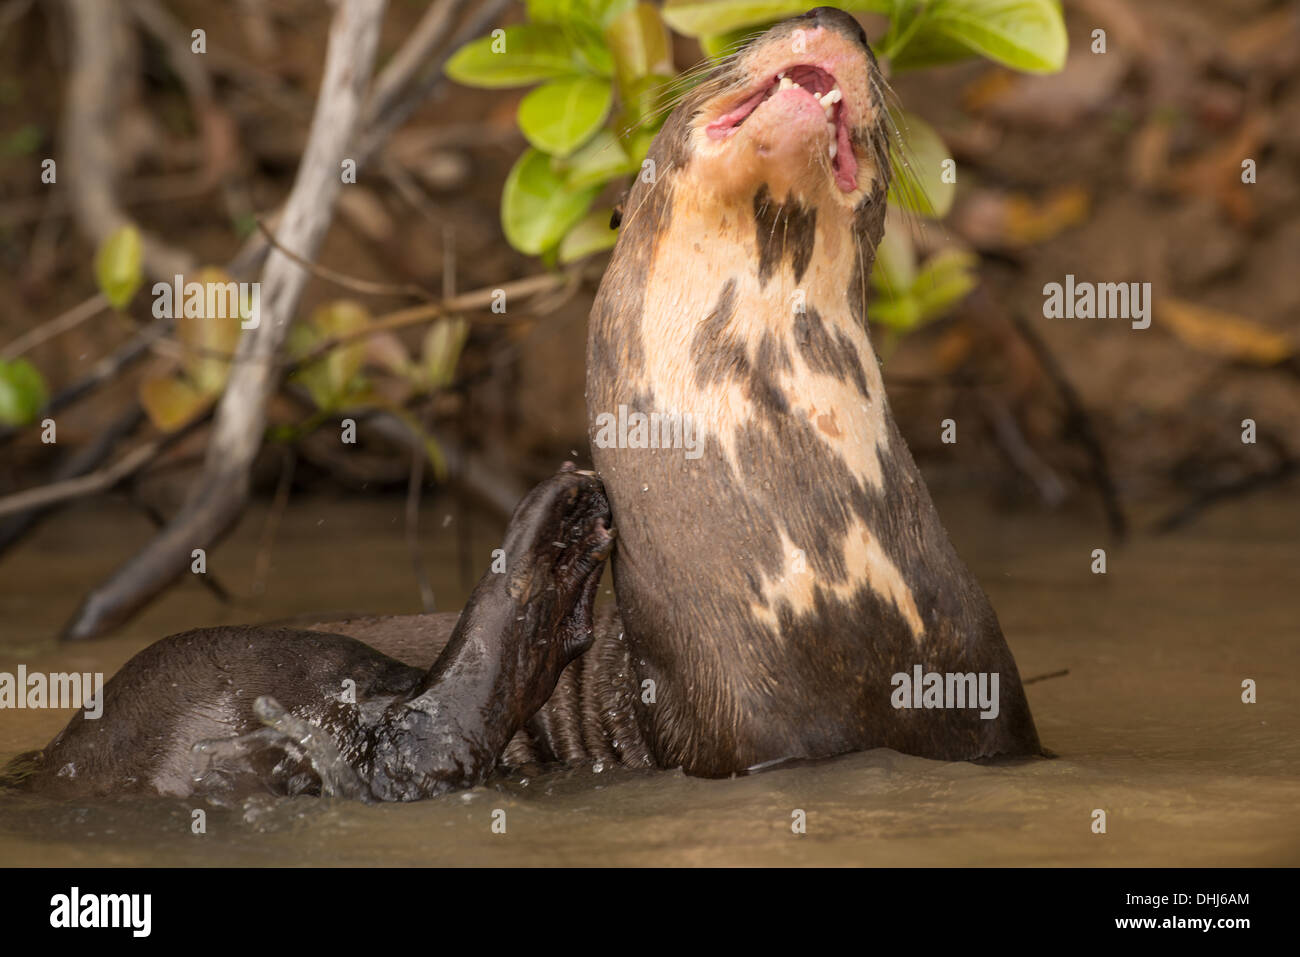 Stock Foto von einem riesigen Fischotter im Wasser, Pantanal, Brasilien. Stockfoto